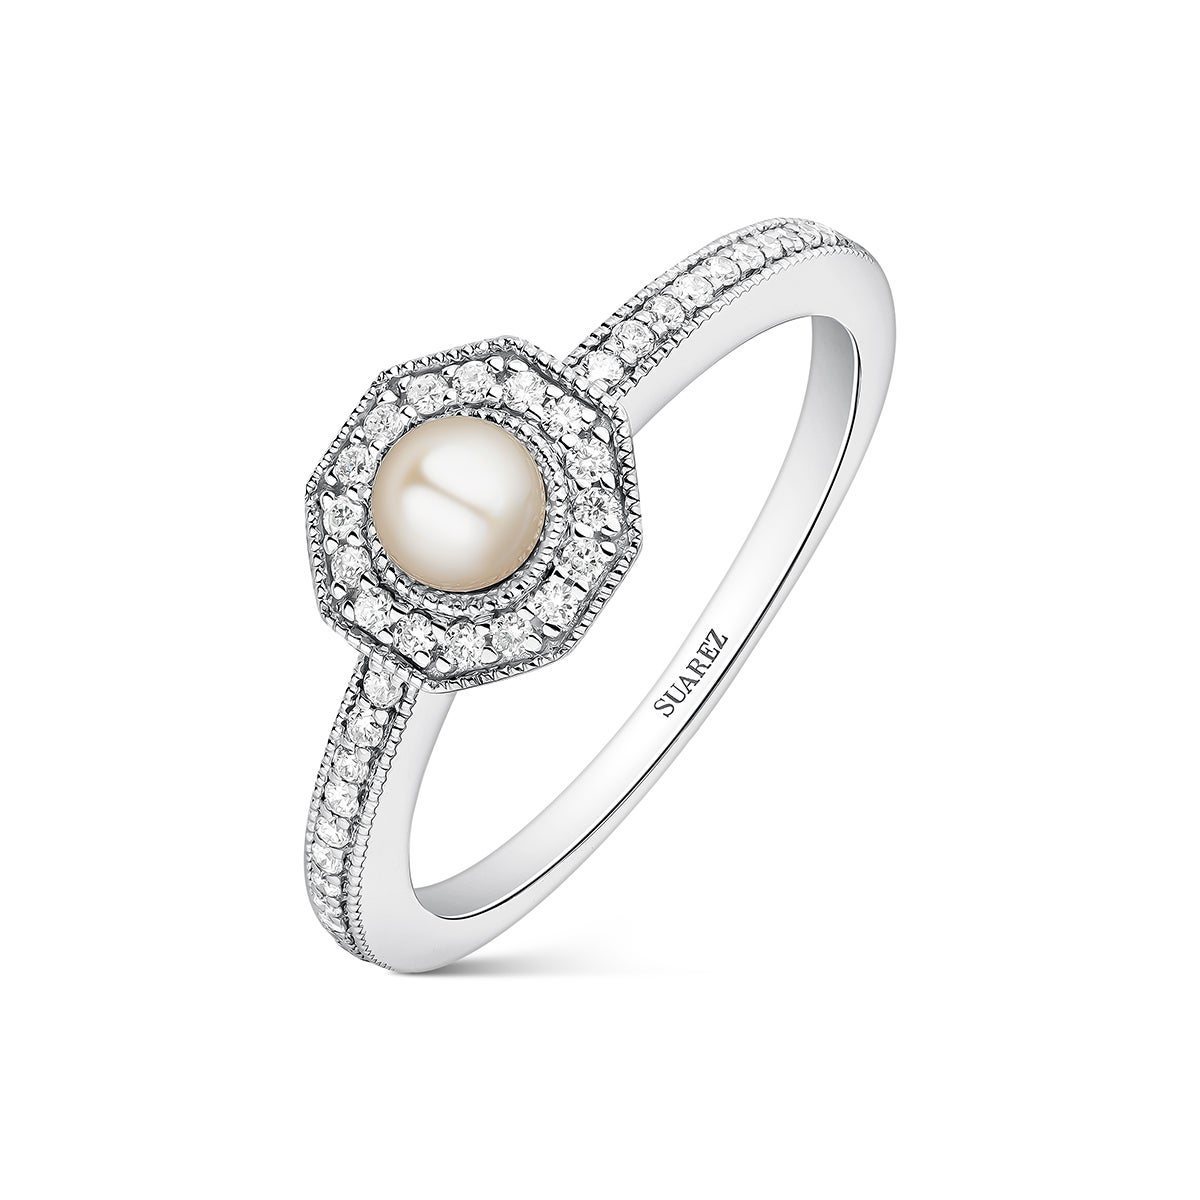 Anillo de oro blanco de 18K con perla australiana y 40 diamantes en talla brillante con un total de 0,14 cts